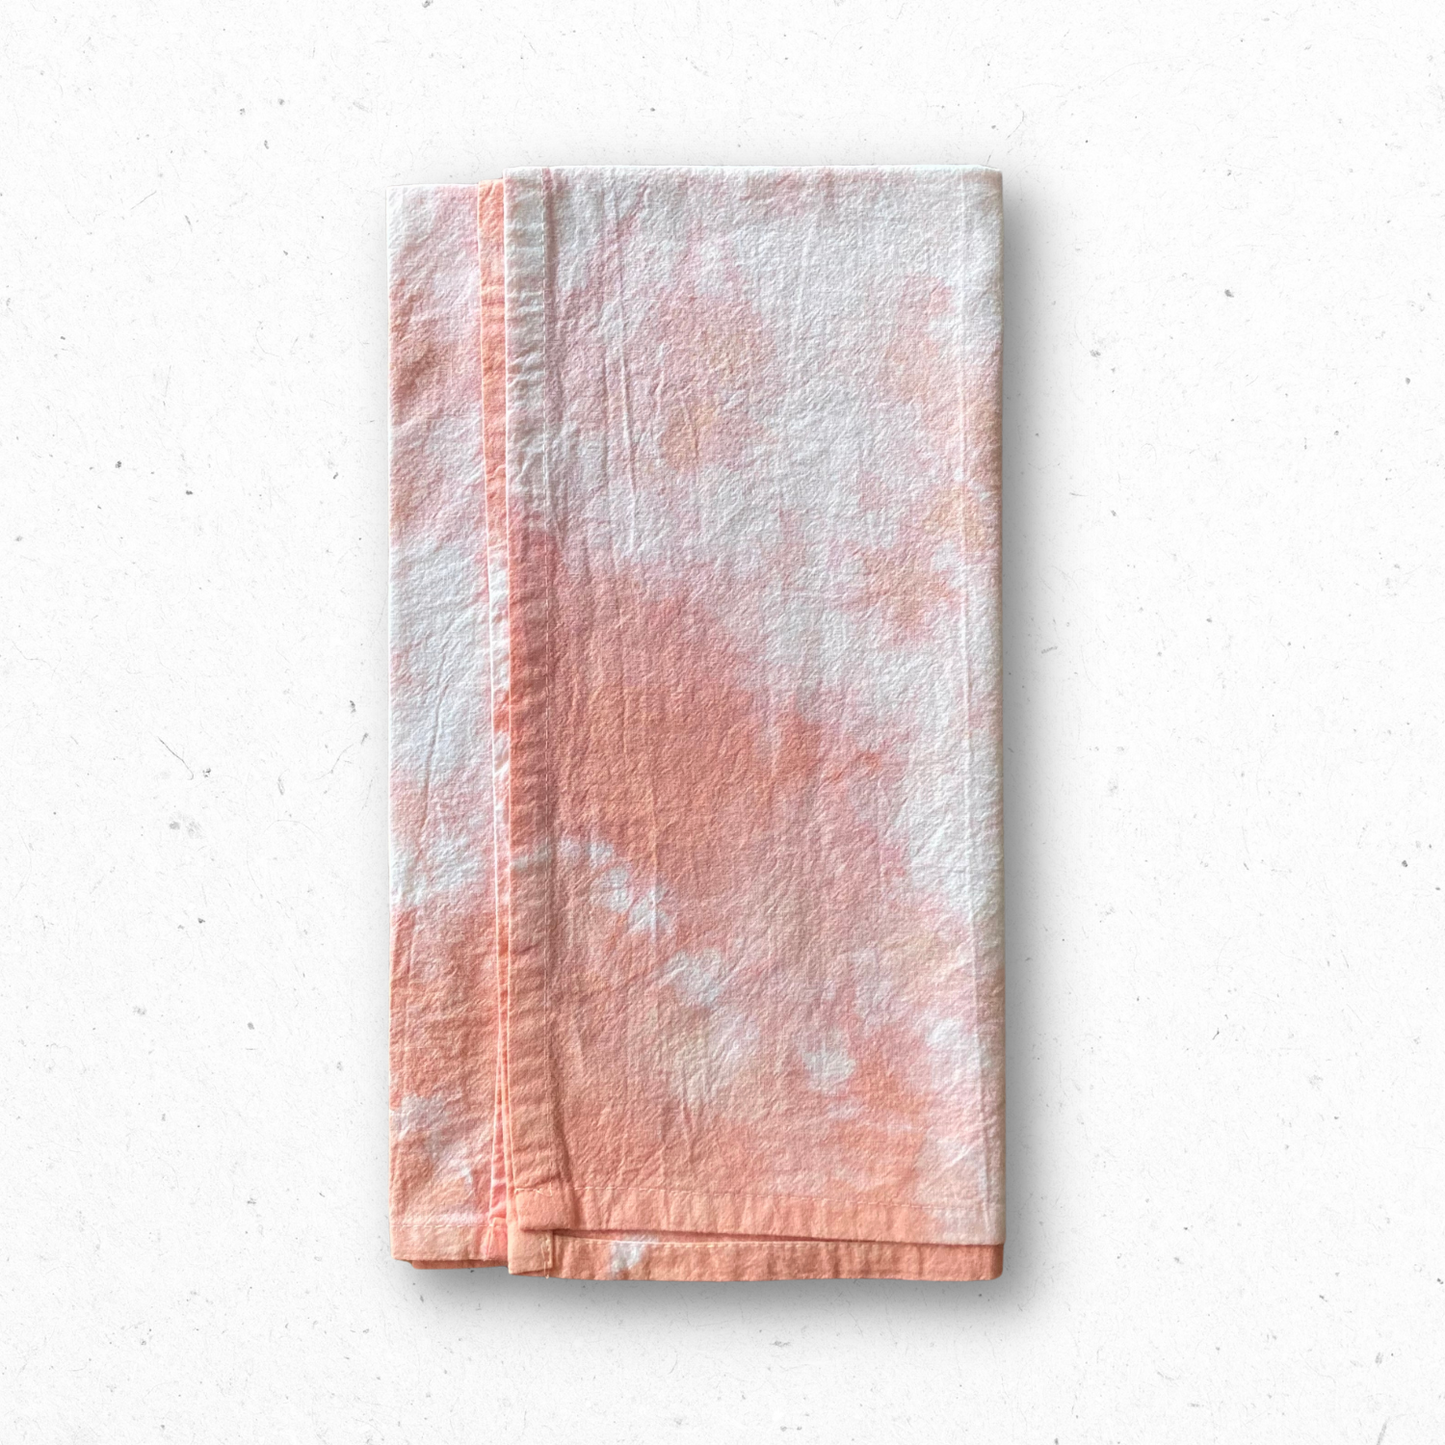 Tea Towel - Coral